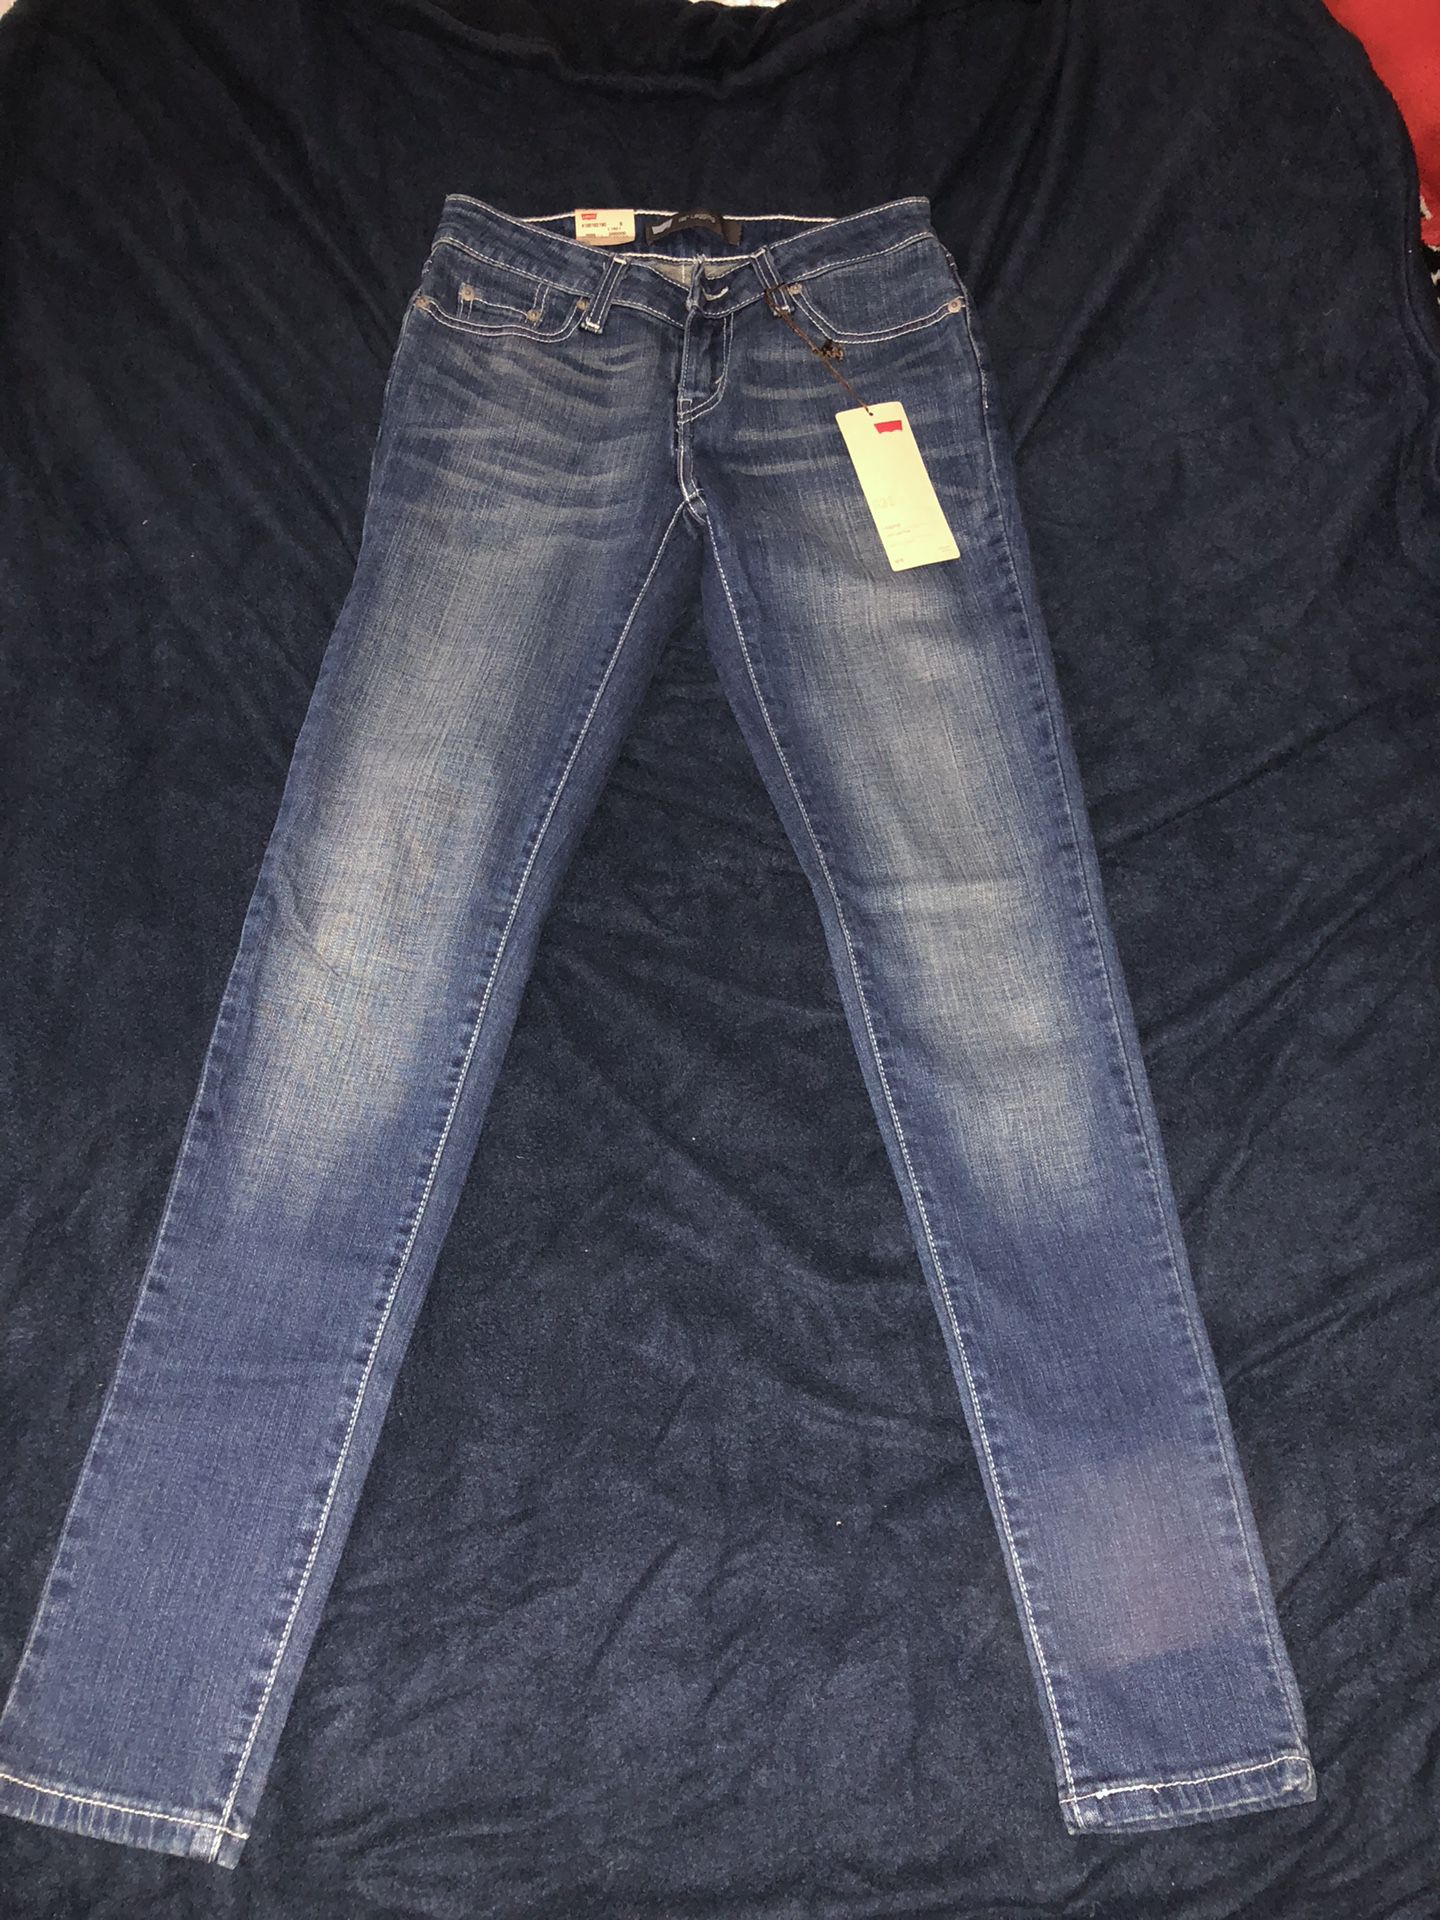 Levi’s jeans size 3